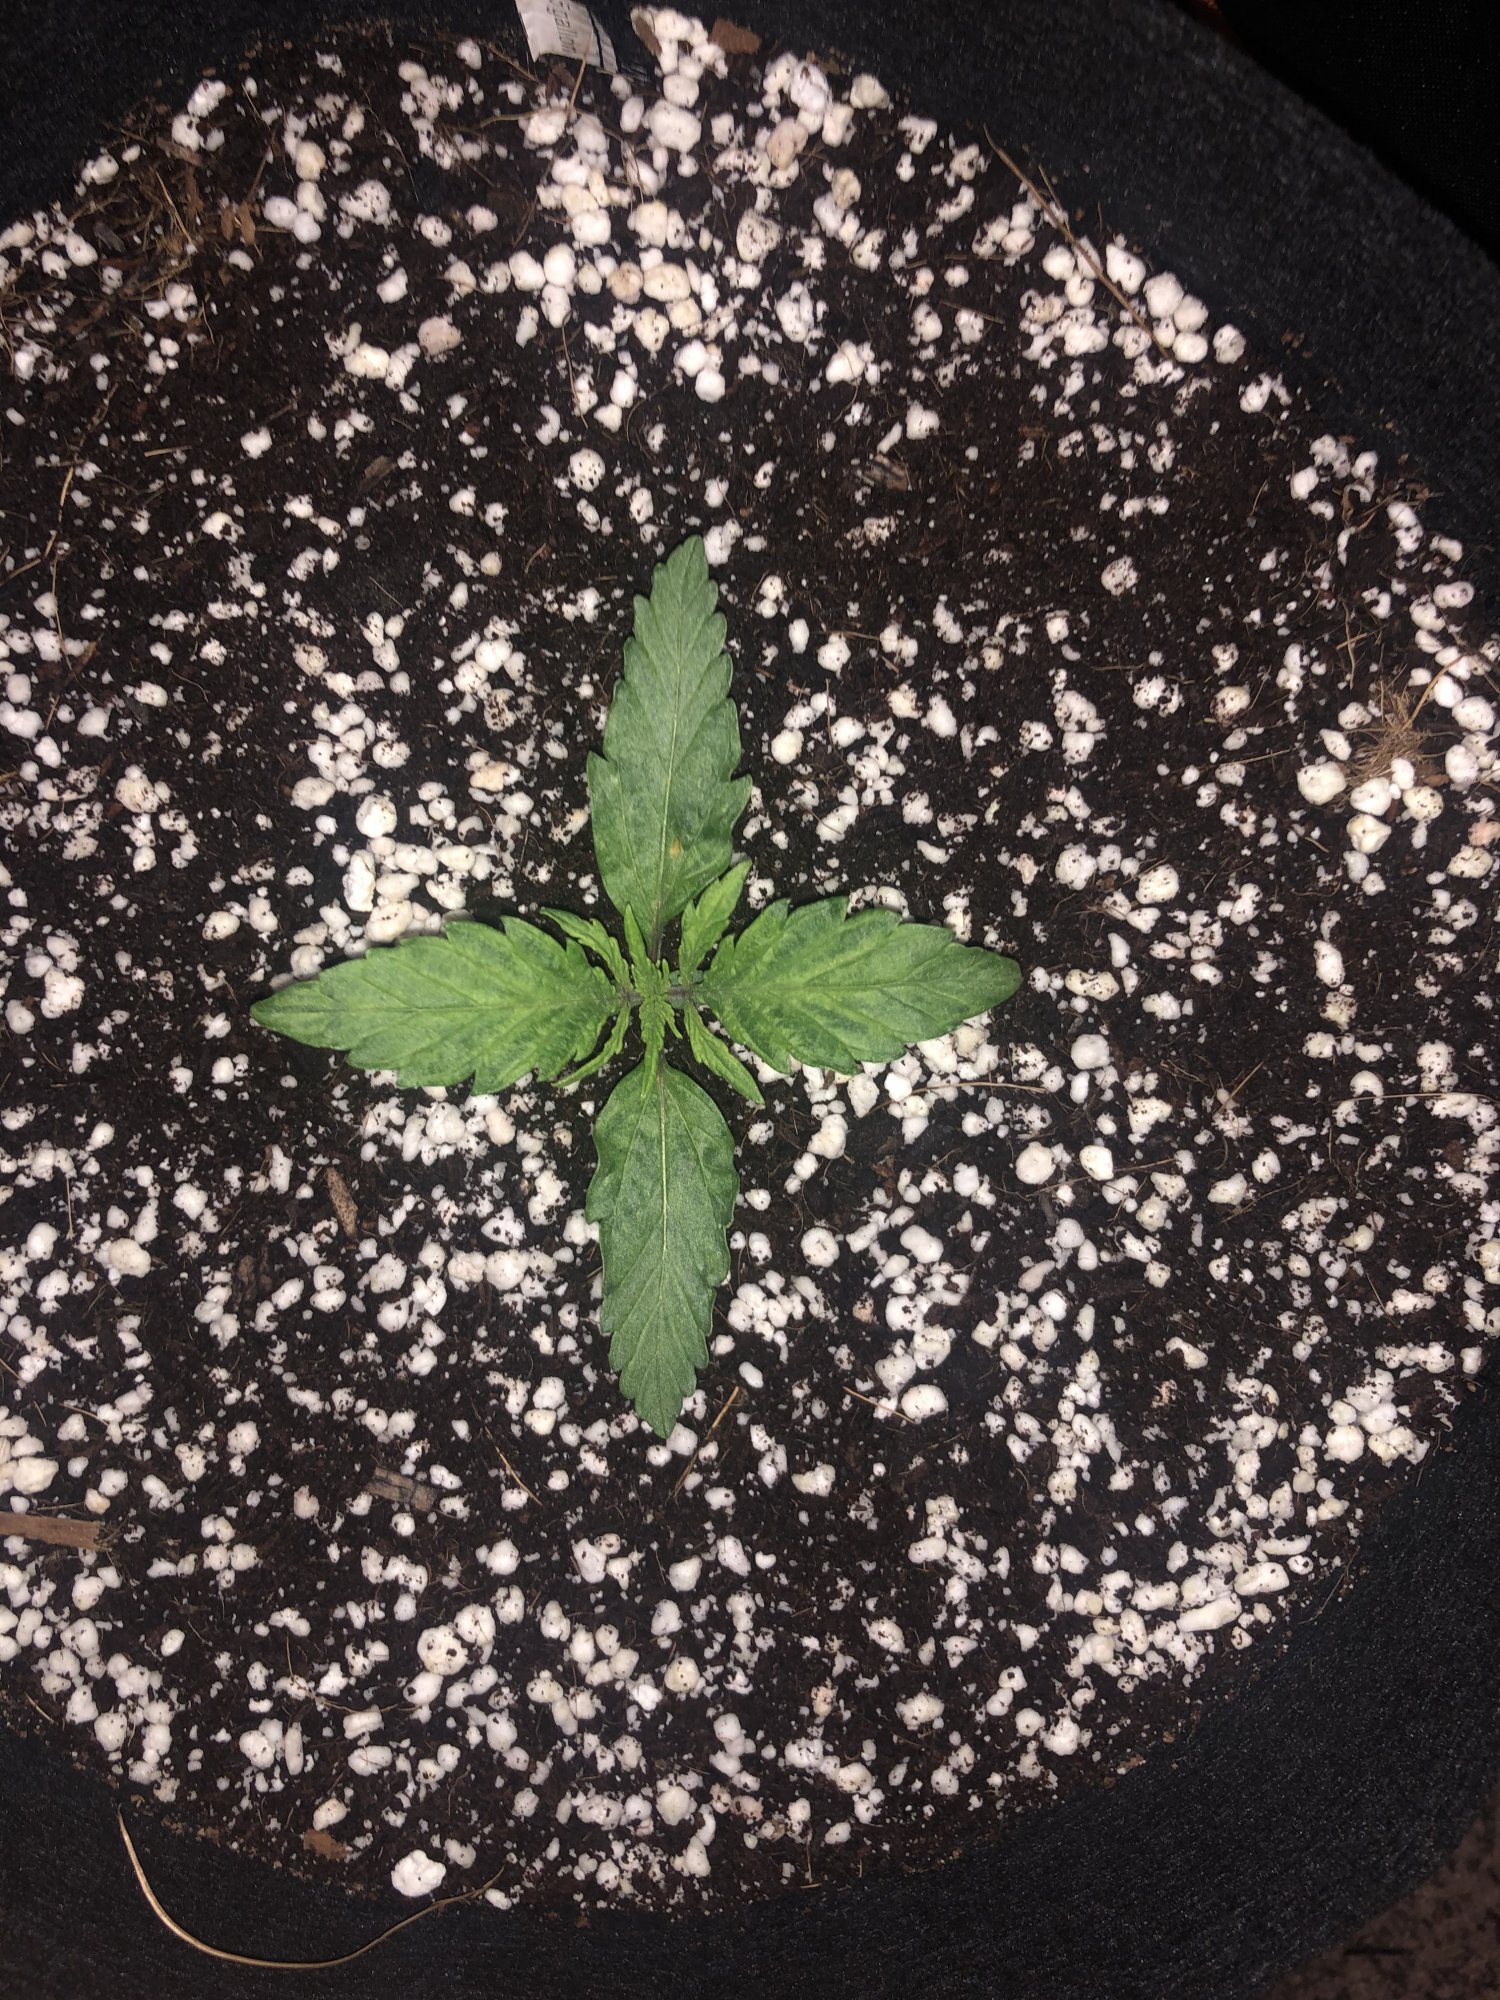 Need help with coco grow